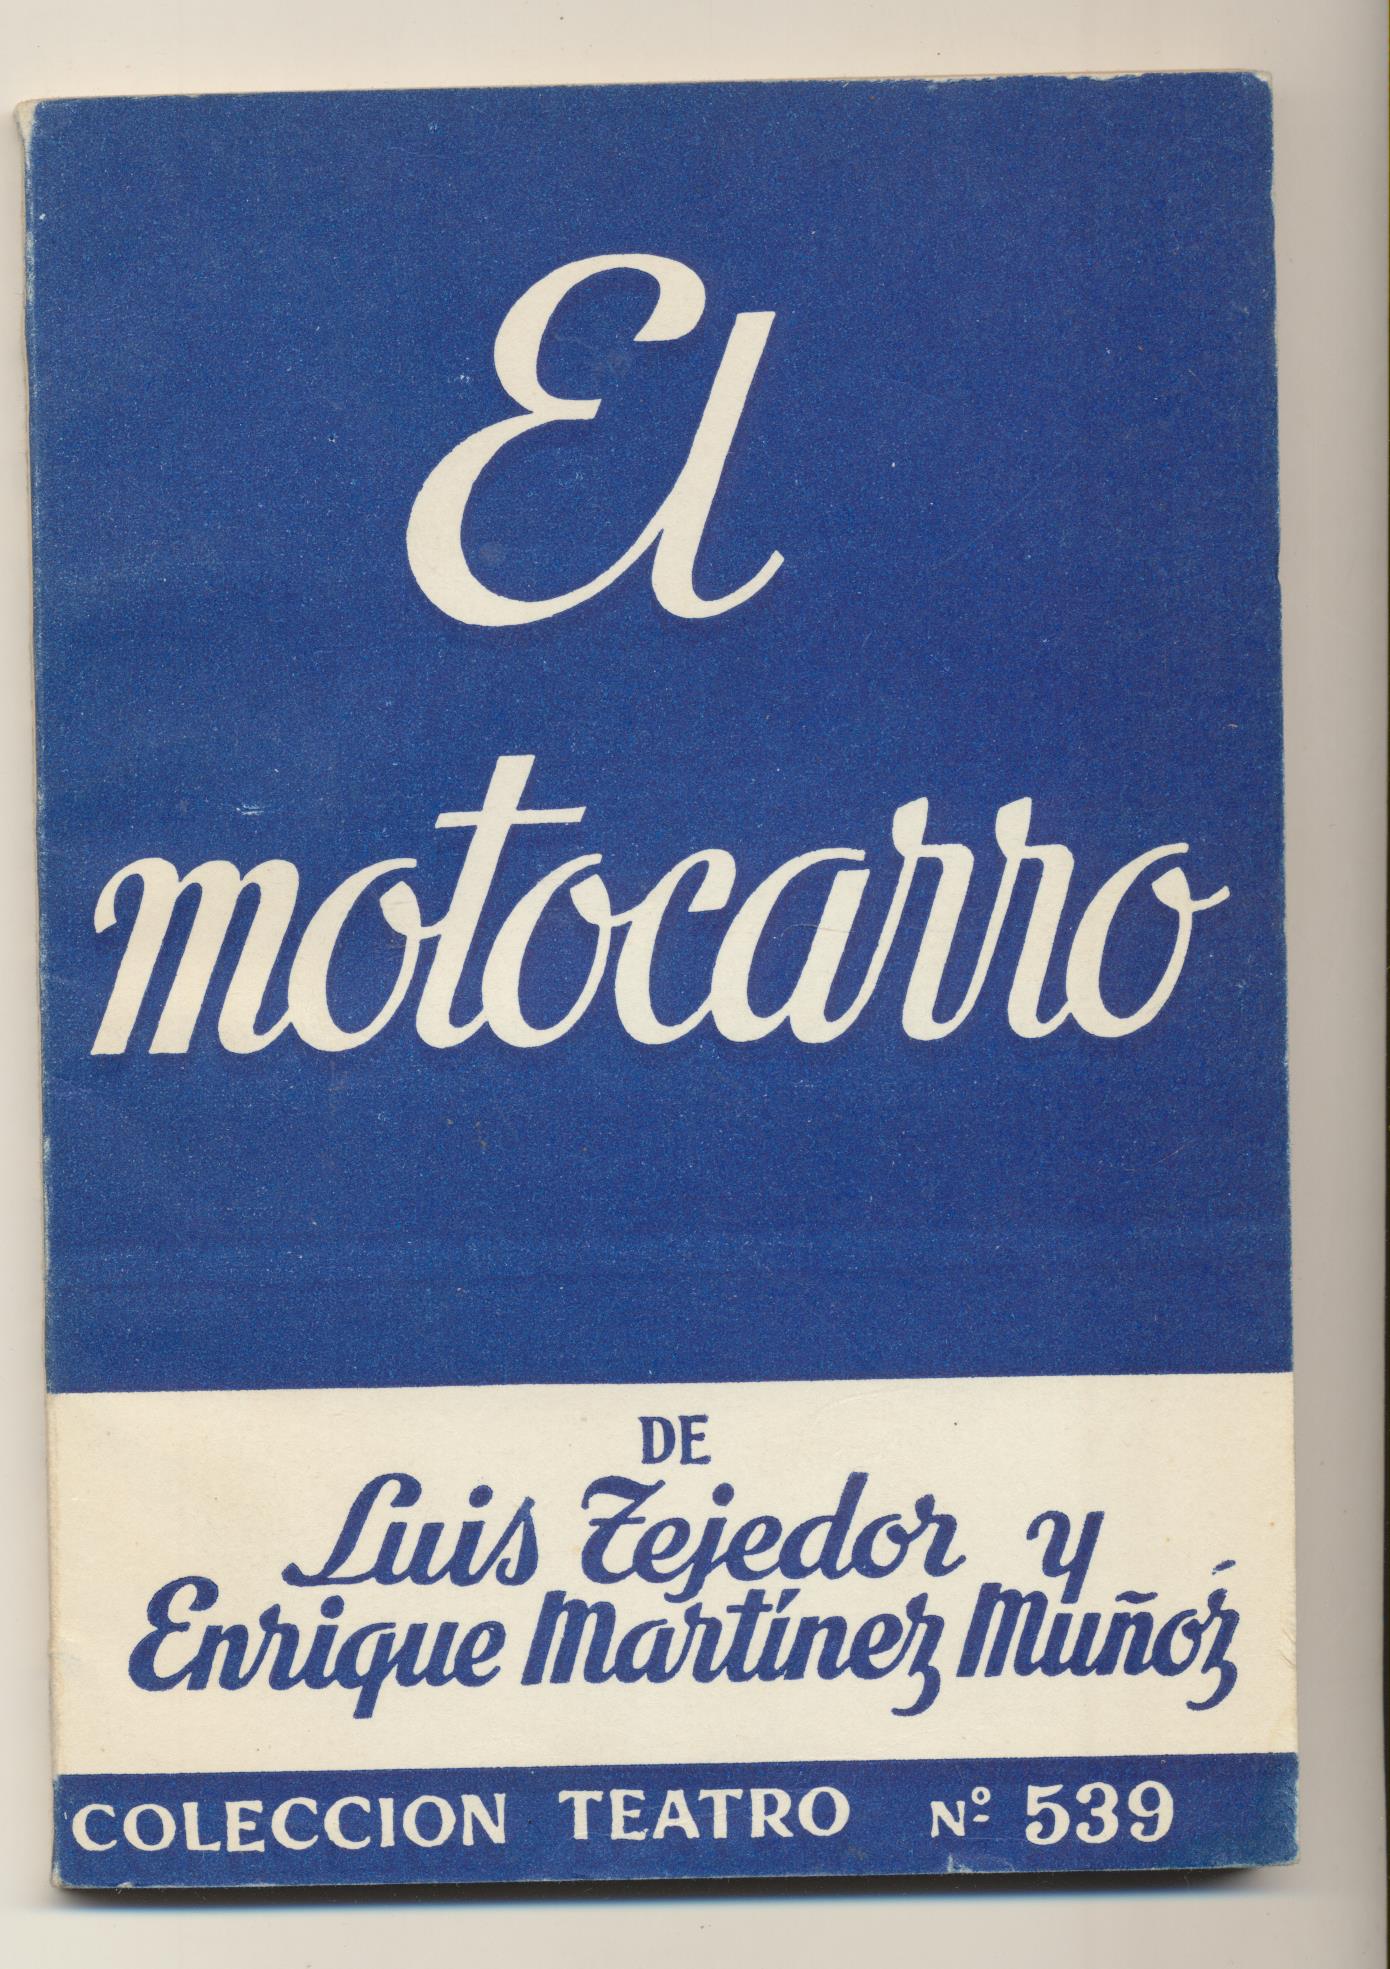 Colección Teatro nº 539. Luis Tejedor y E. Martínez muñoz. El motocarro. Escelicer 1967. SIN USAR